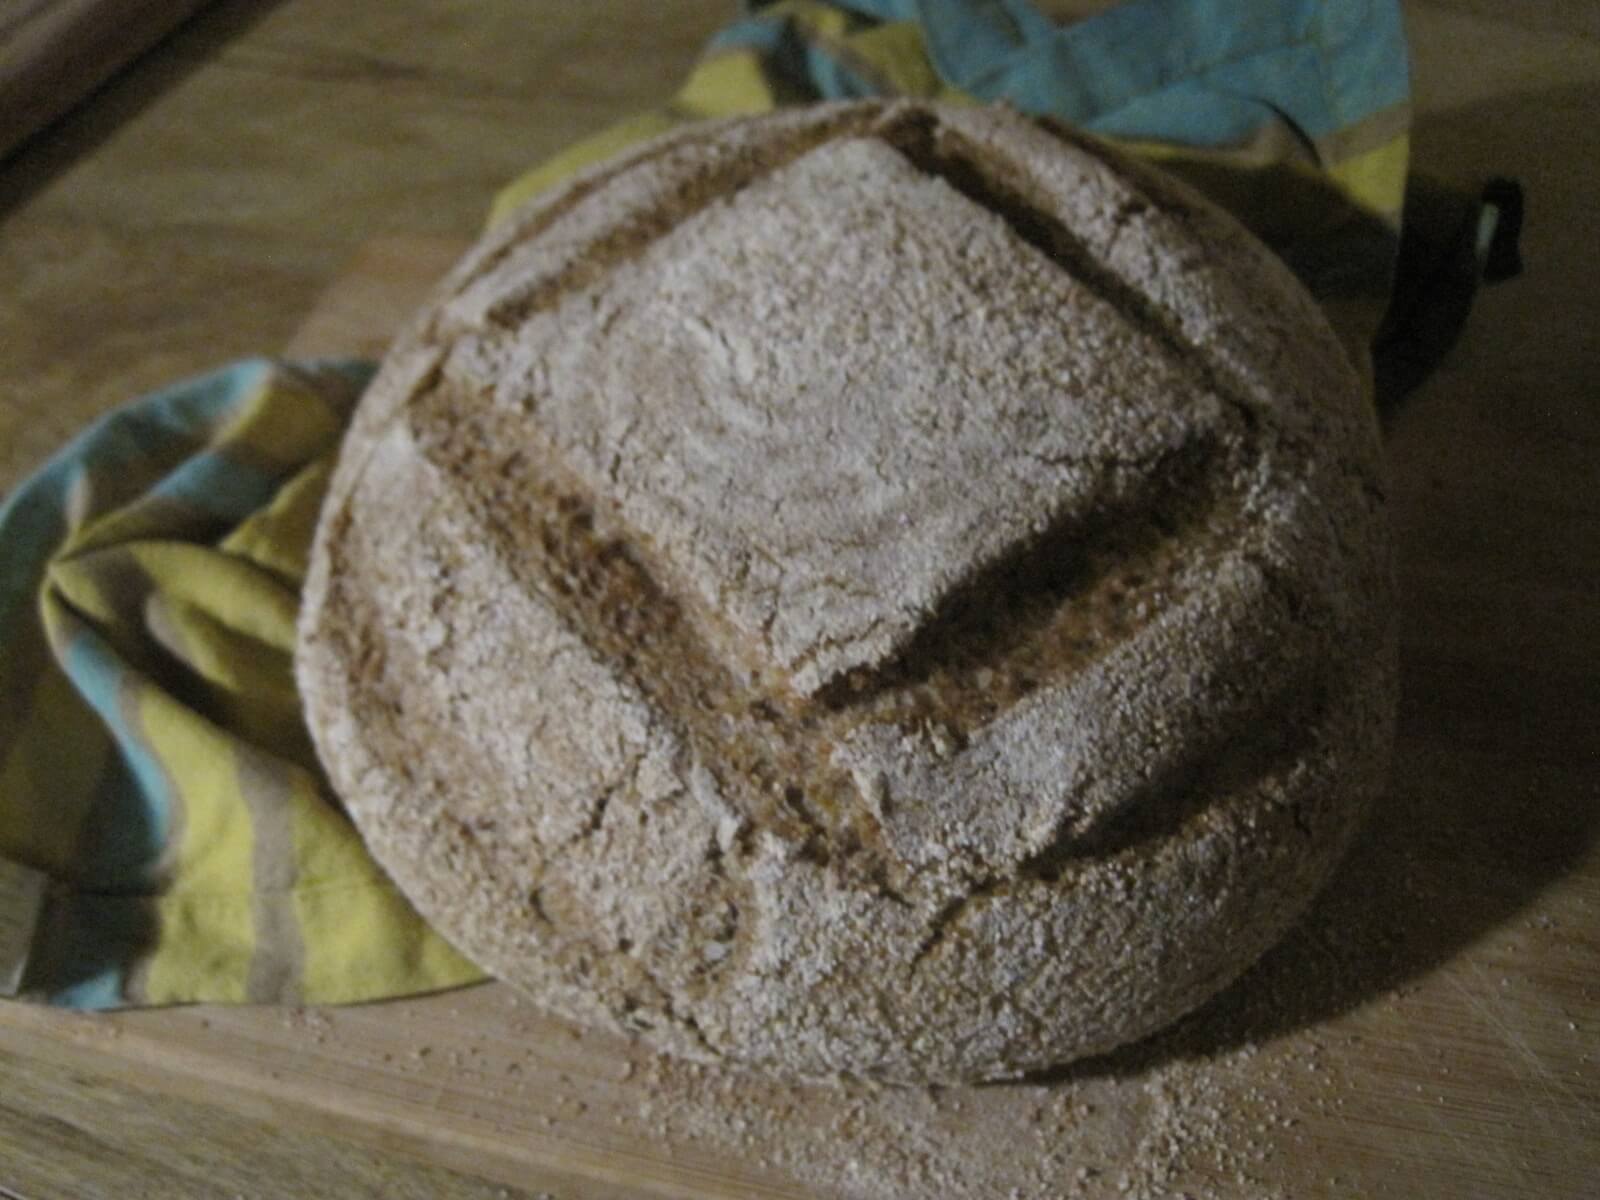 finished bread loaf